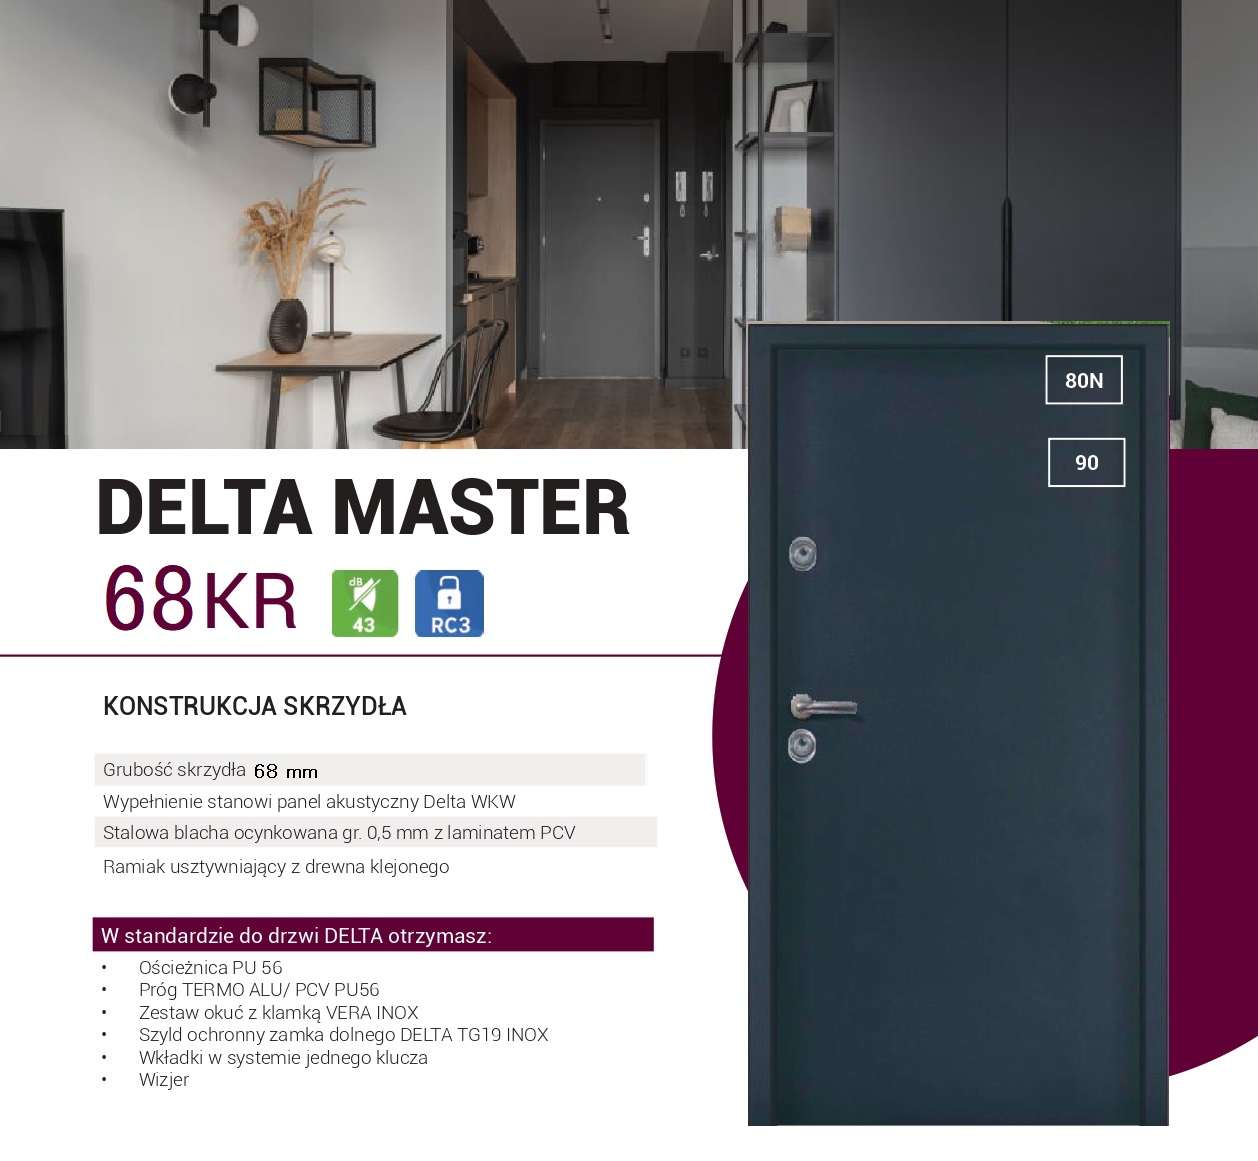 You are currently viewing Cisza, spokój… Delta Master 68 – Drzwi, które odmienią Twoje mieszkanie w bloku!